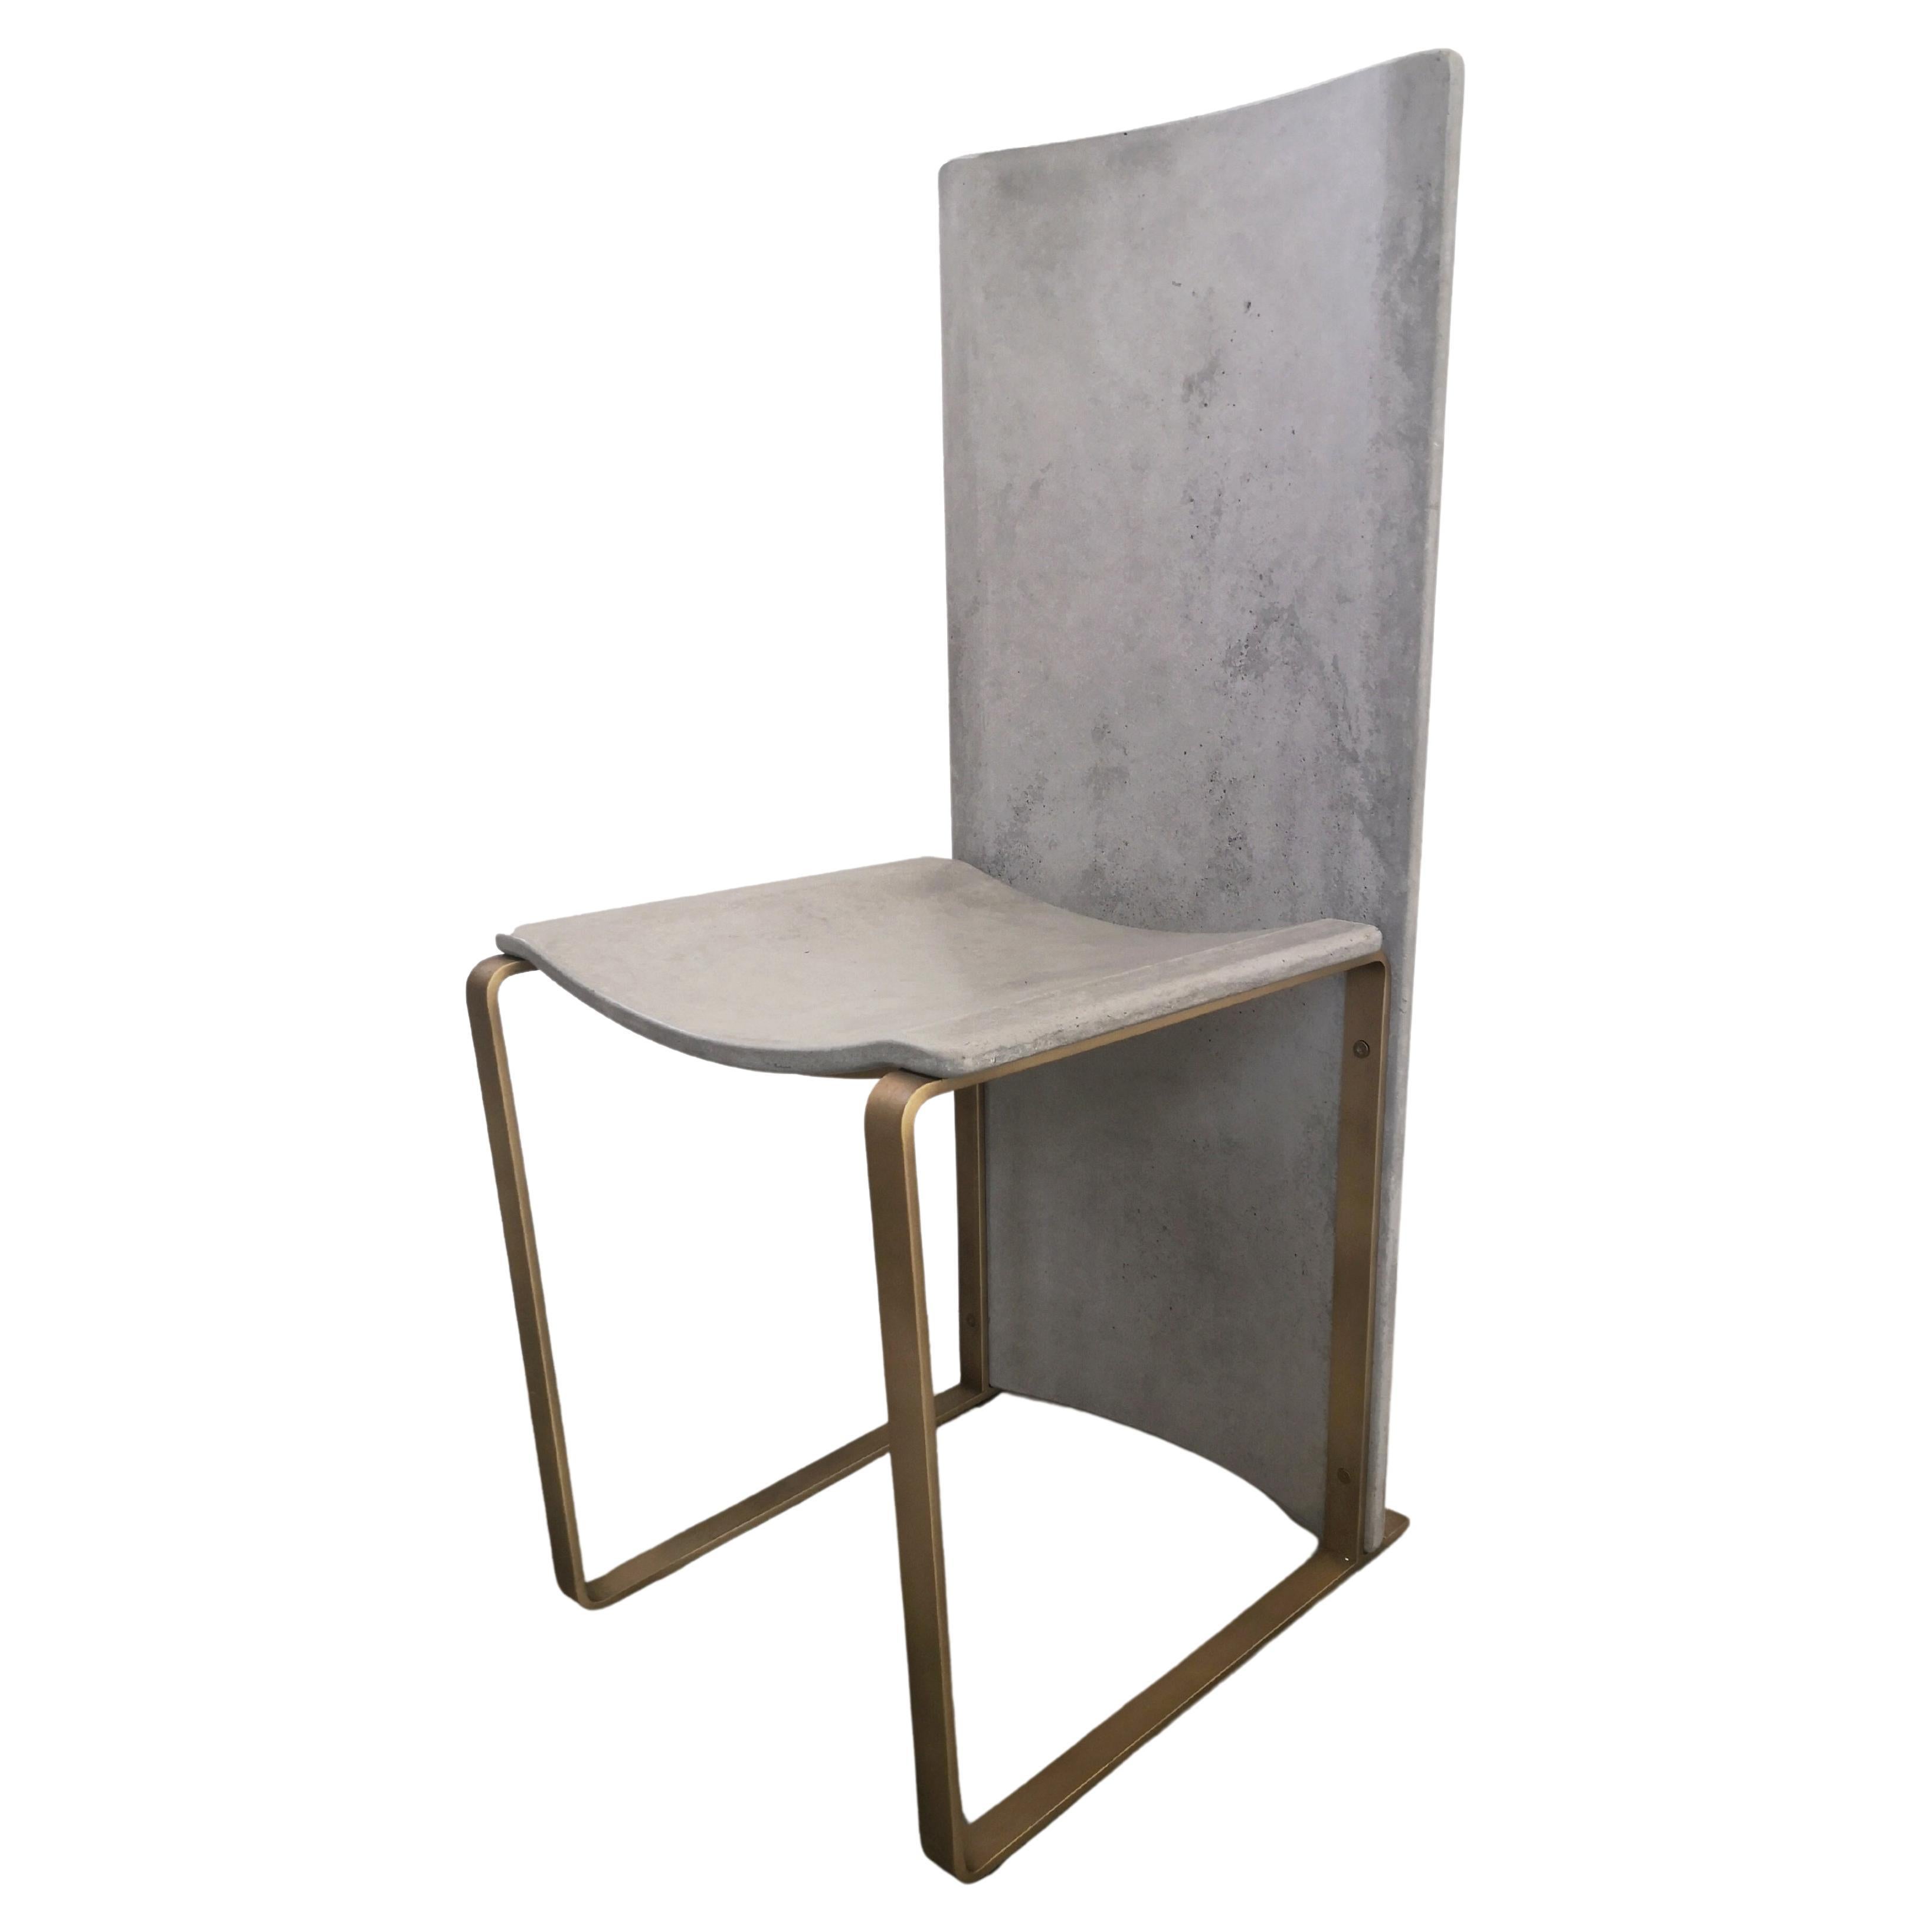 Rubeda concrete chair design Roberto Giacomucci 2018